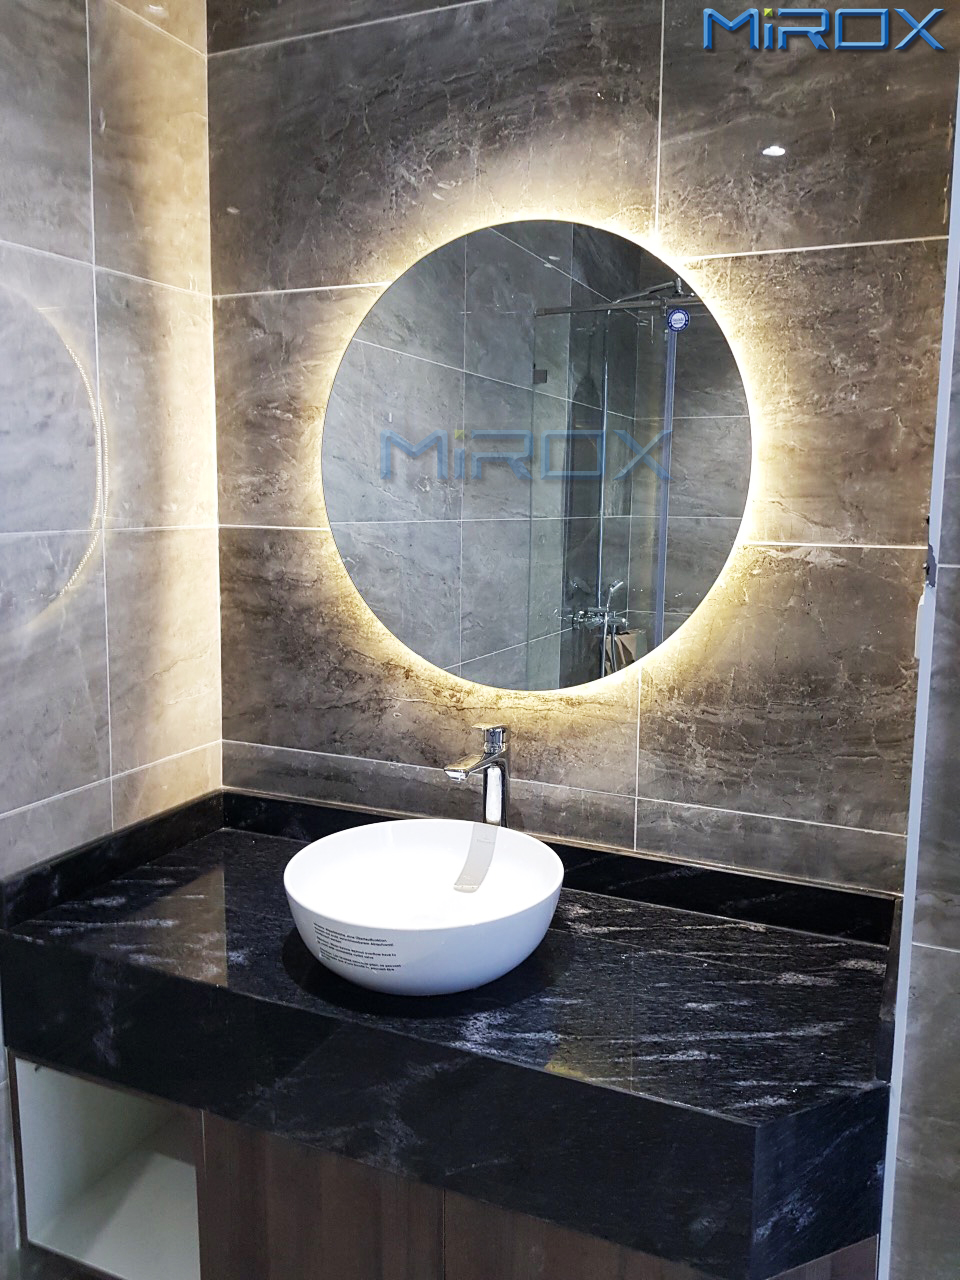 Gương tròn đèn LED hắt nhà tắm cao cấp là lựa chọn hoàn hảo cho những ai cần một không gian tắm đẹp và hiện đại. Với ánh sáng đèn LED và kiểu dáng tròn, gương sẽ tạo ra một không gian thư giãn tuyệt vời cho bạn. Đặt gương này trong phòng tắm của bạn và tận hưởng không gian đầy tinh tế.